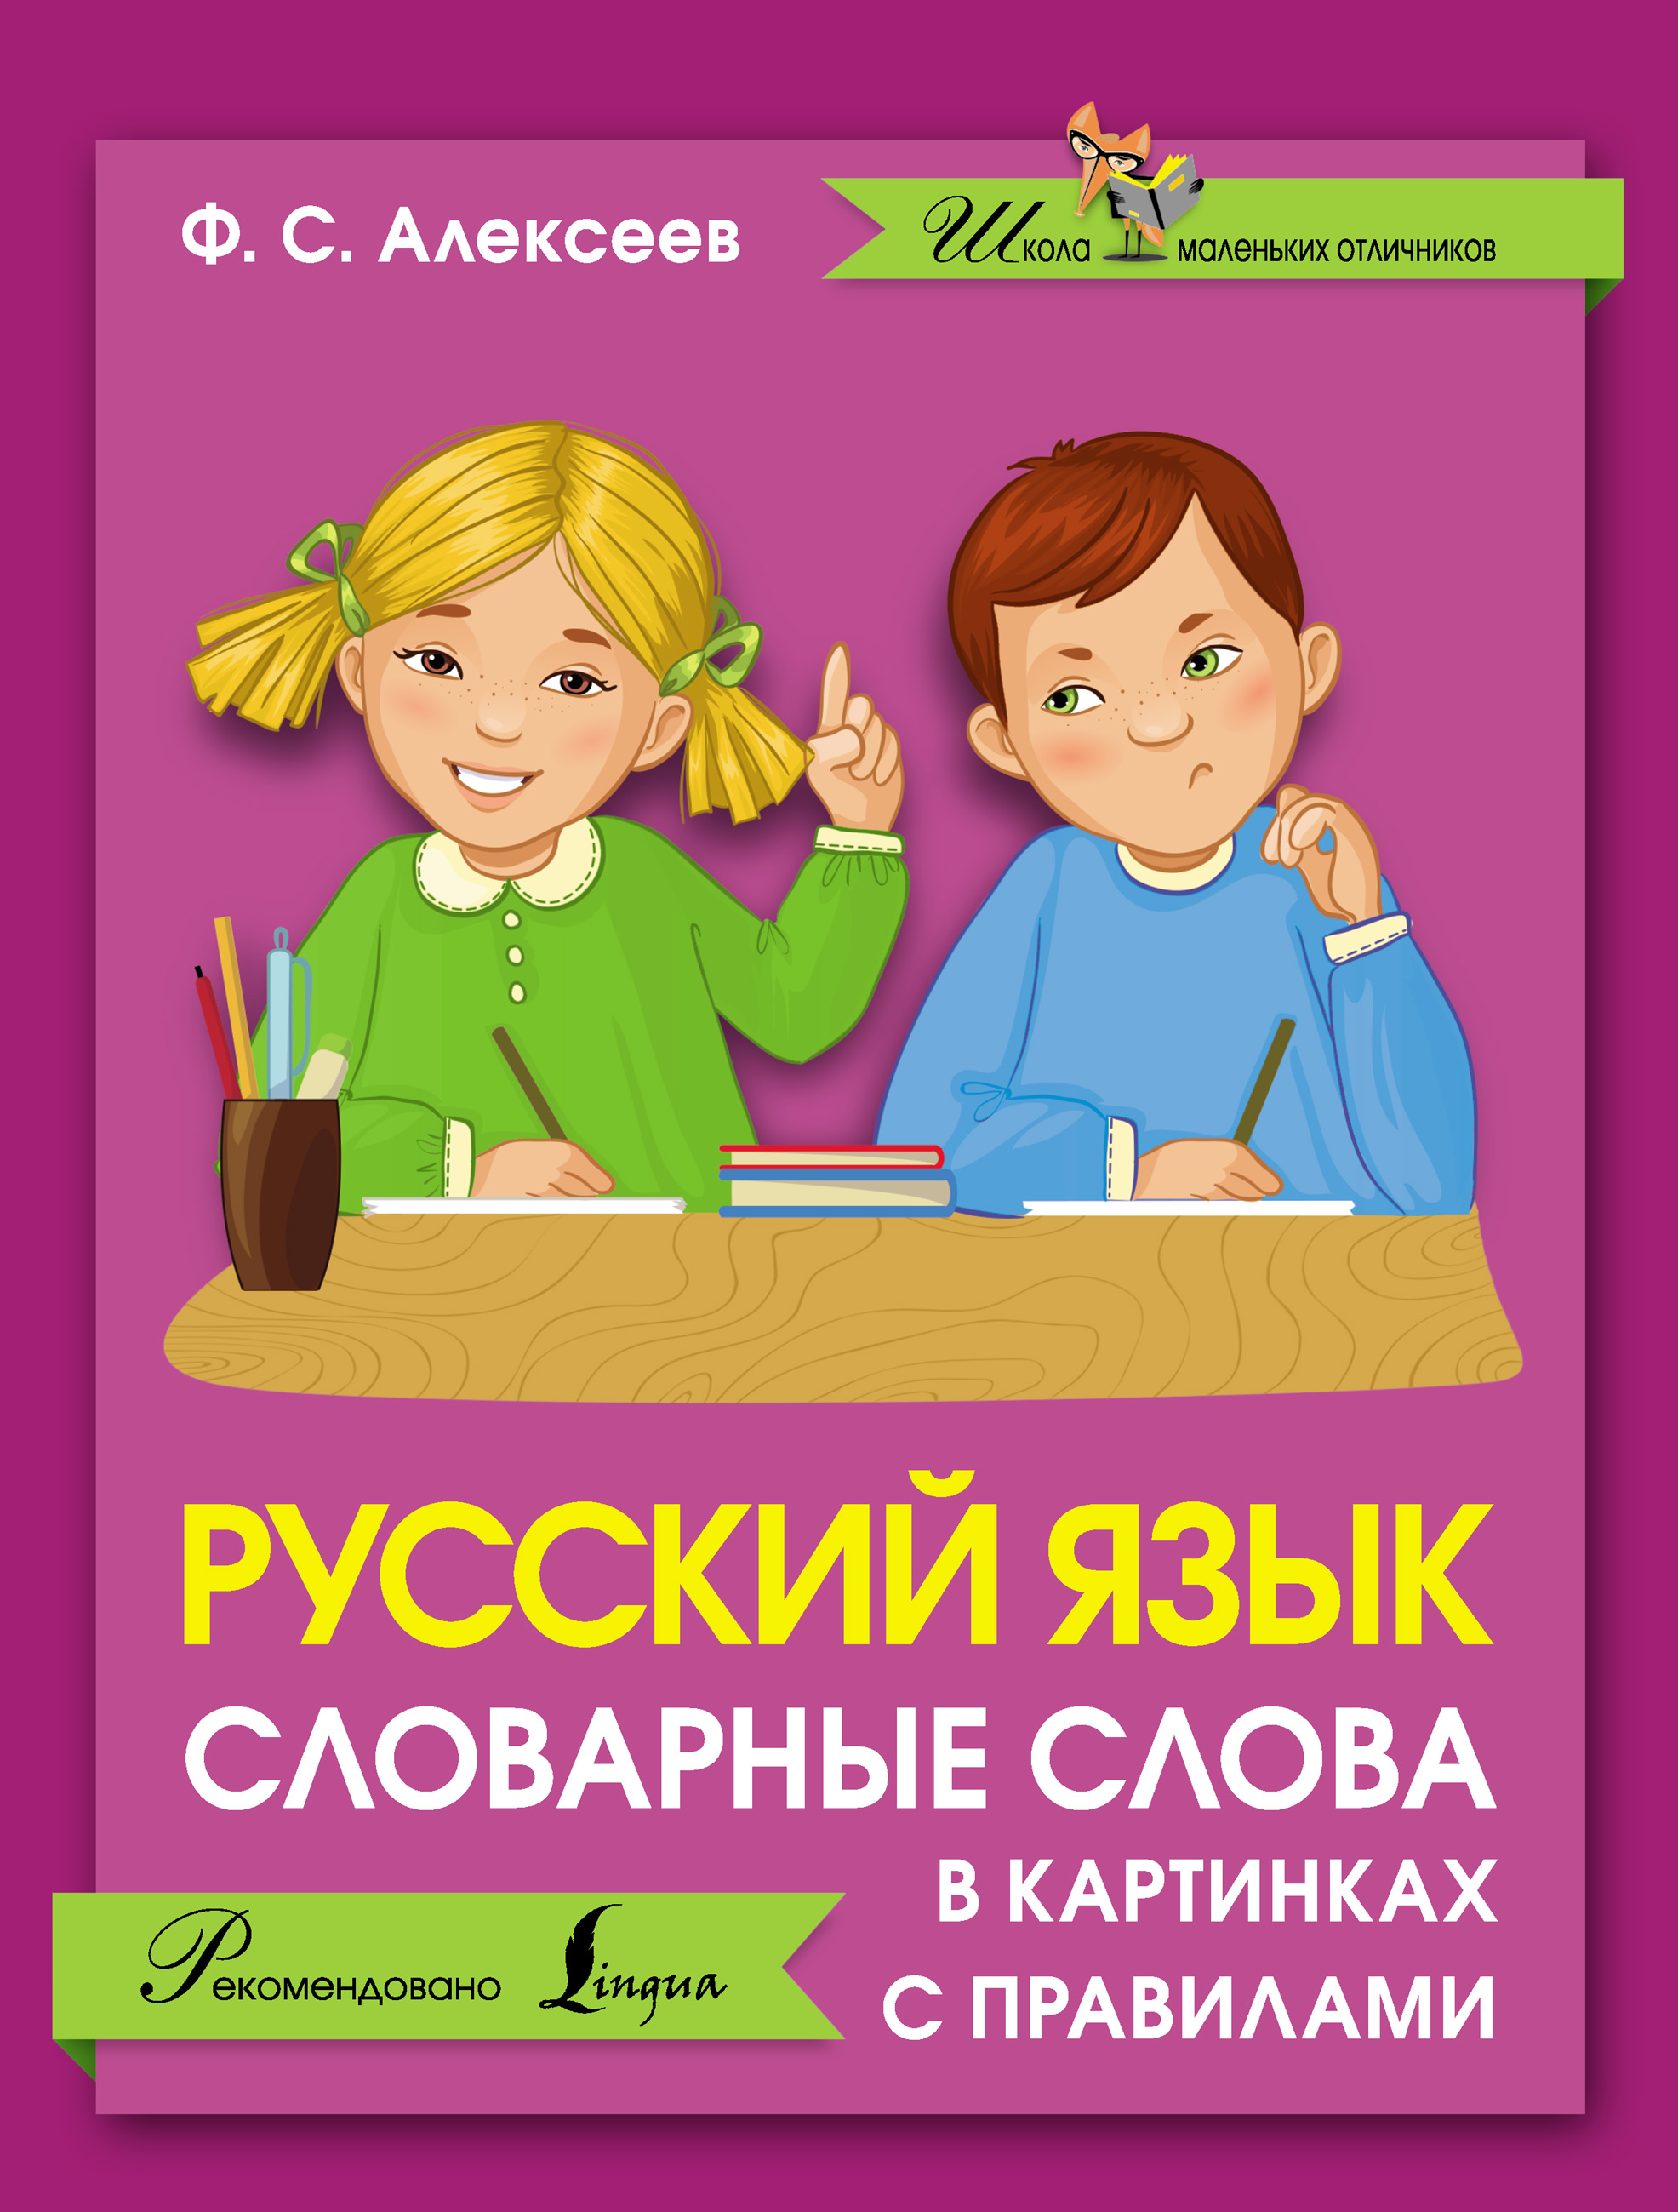 Начинаем изучать русский язык. Русский язык для детей. Русский язык картинки. Русский язык картина. Русский язык книга.